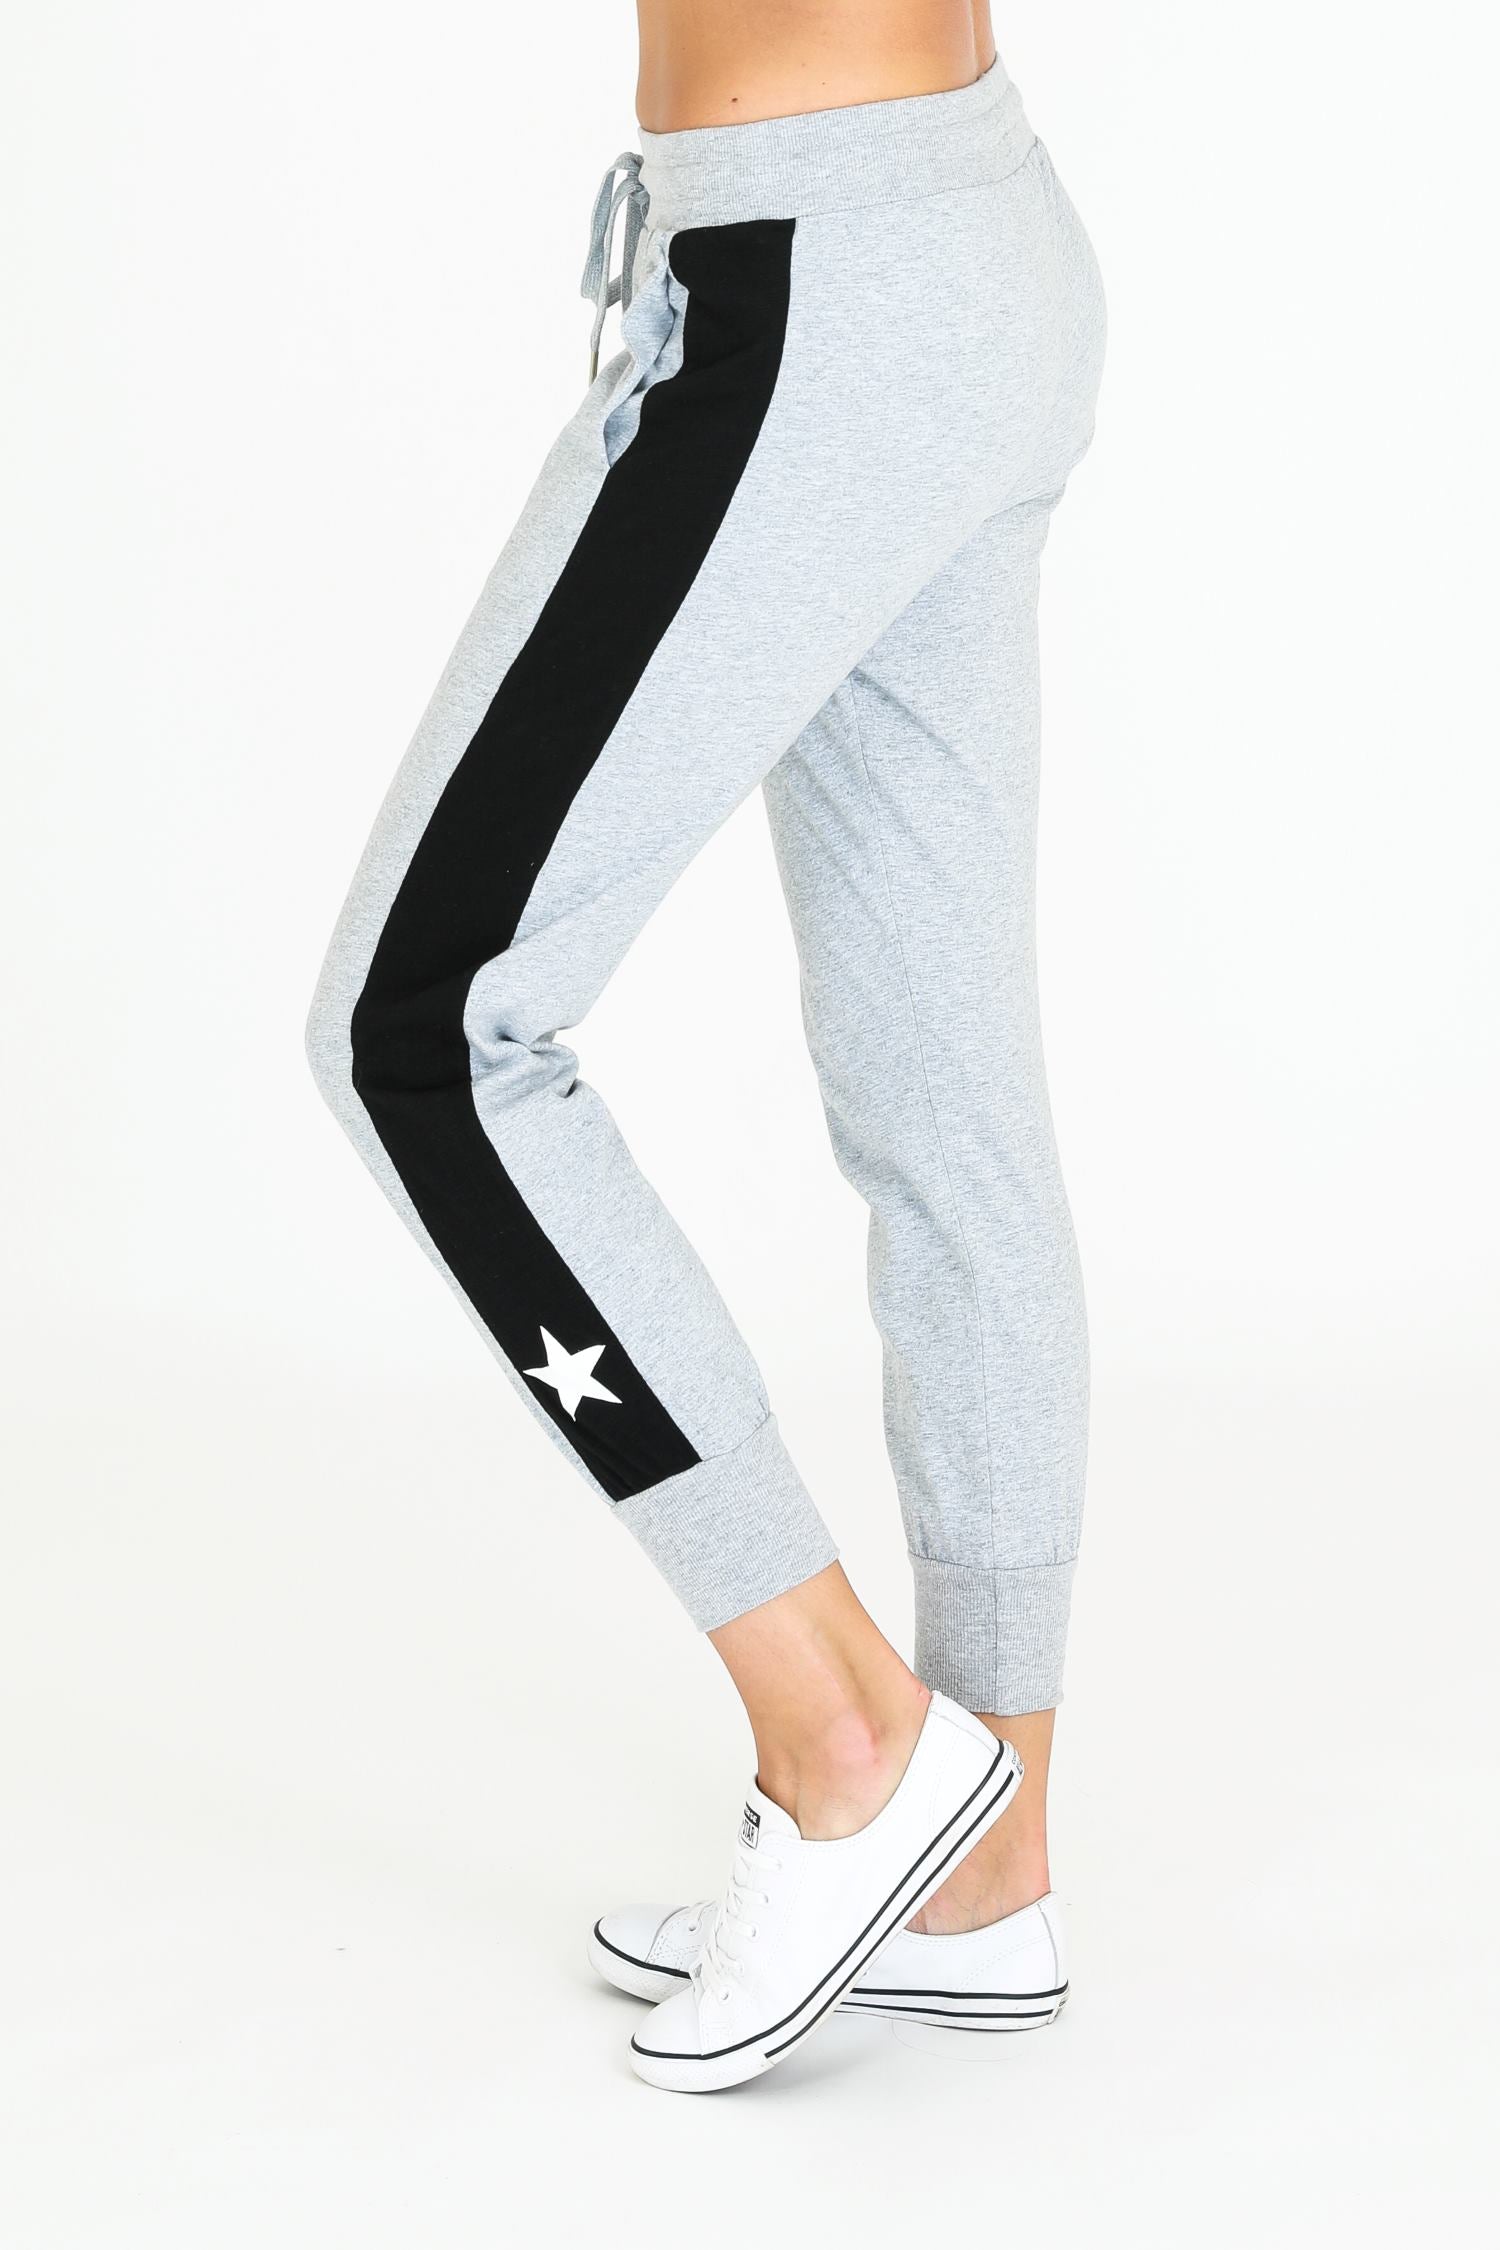 black jogger pants womens #color_grey marle